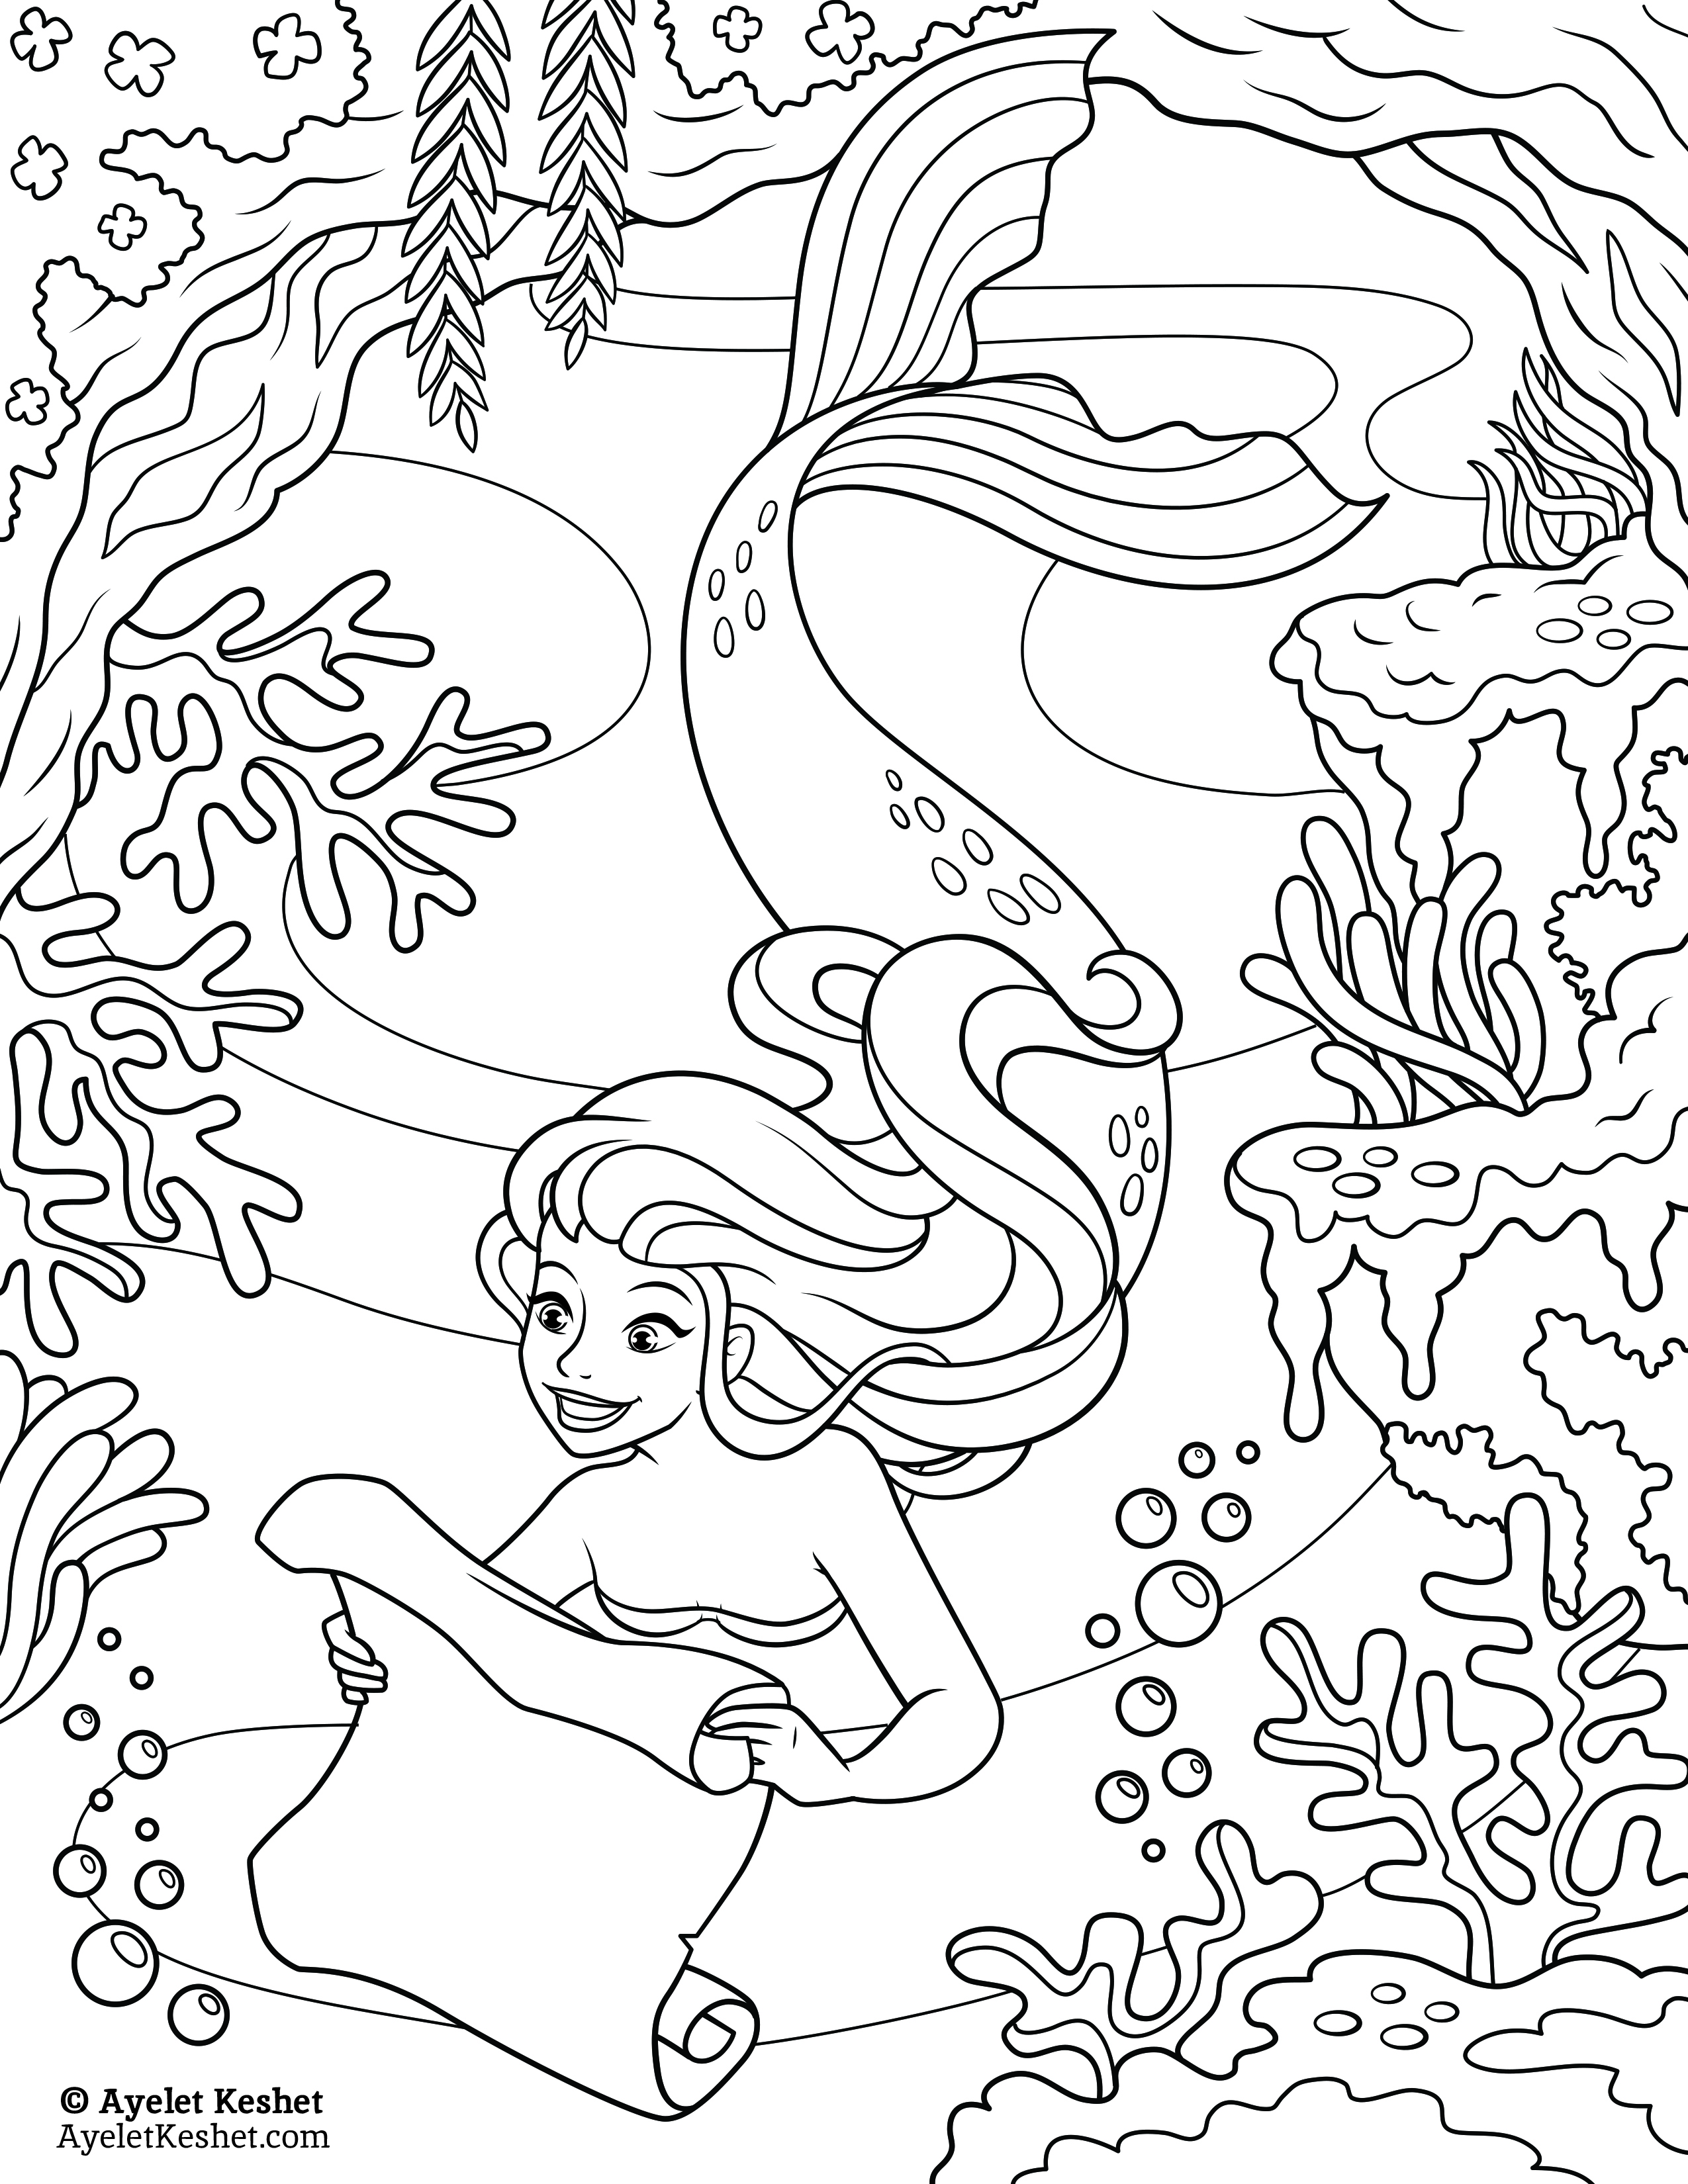 Free mermaids coloring pages   Ayelet Keshet